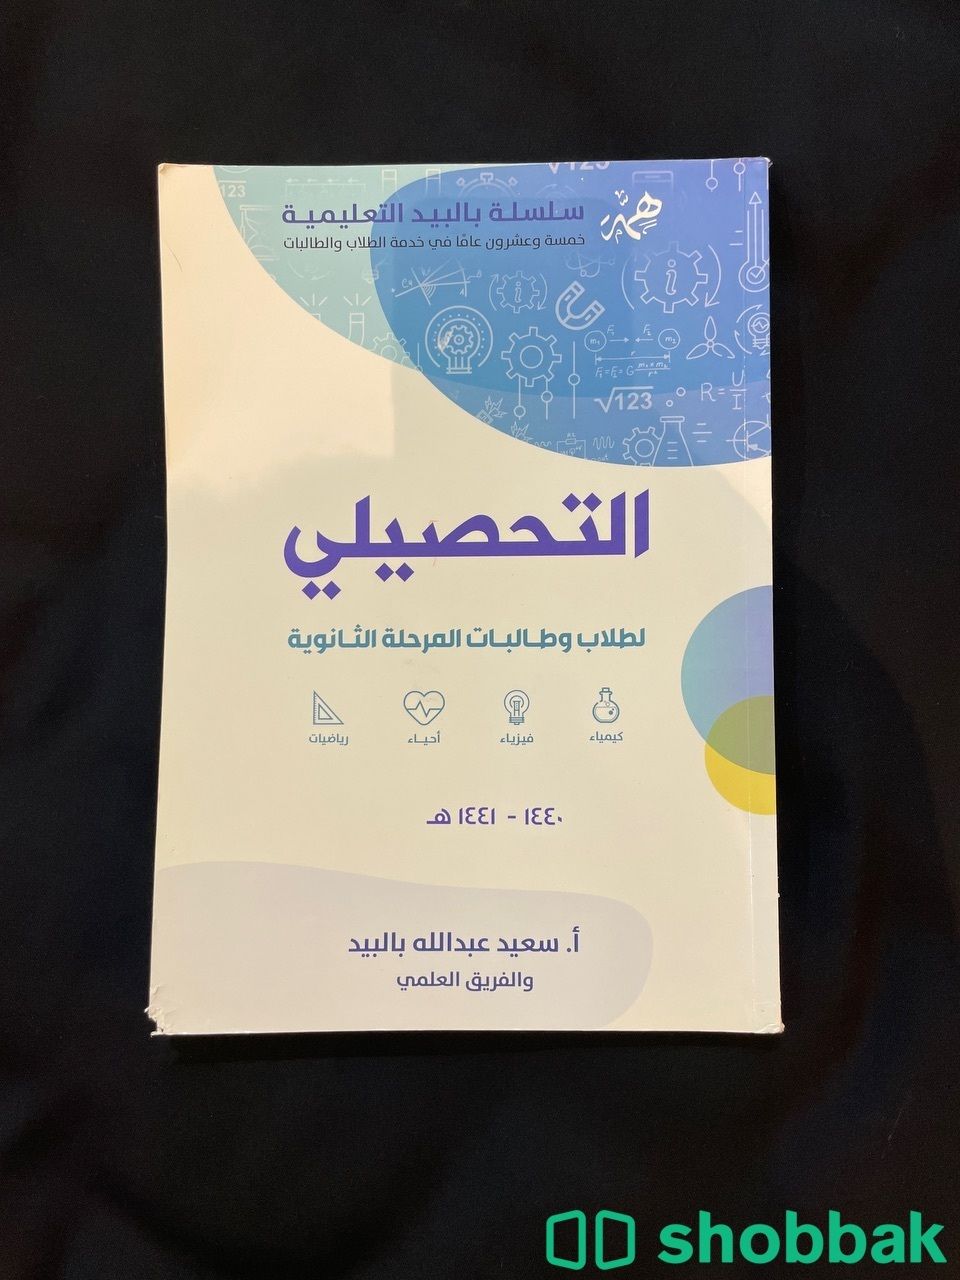 كتاب بالبيد للتحصيلي  Shobbak Saudi Arabia